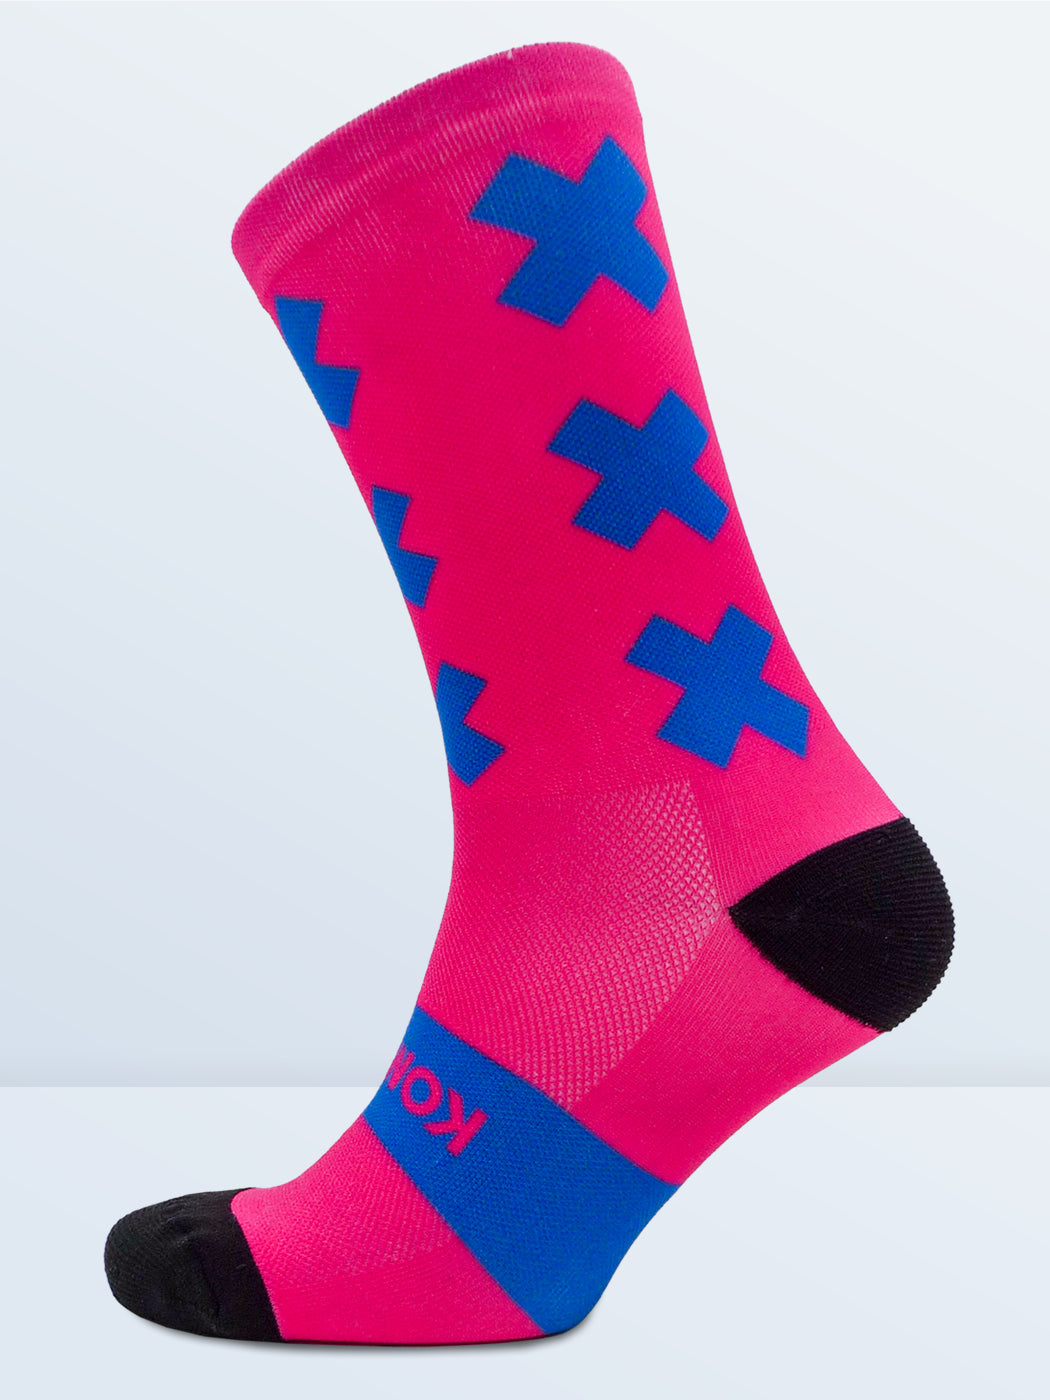 Triple X Socks - Pink & Blue